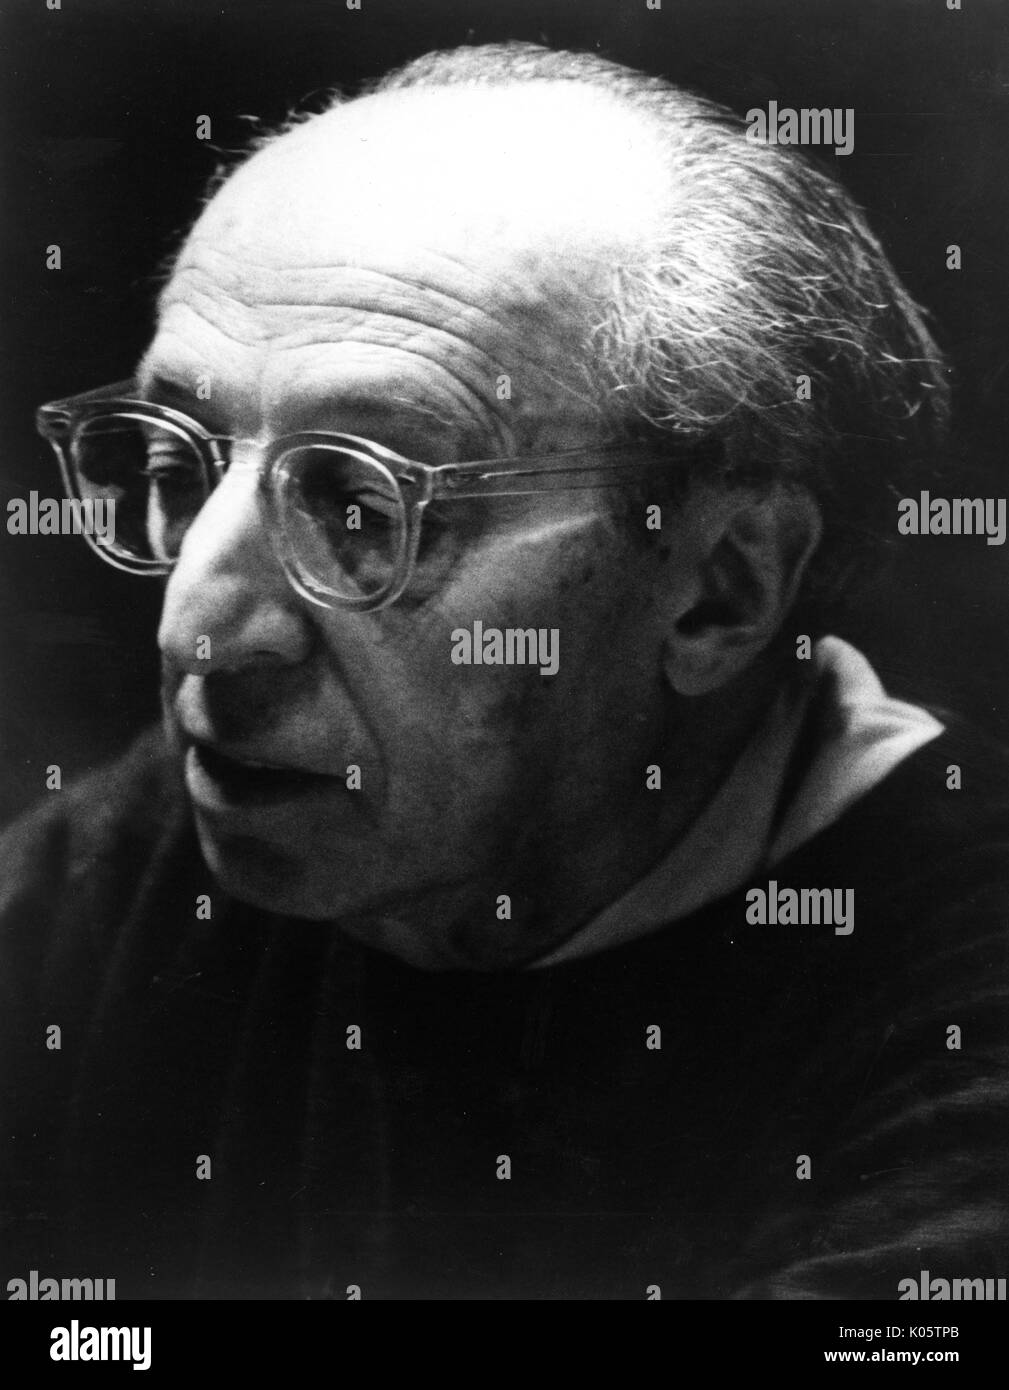 Colpo di Testa, ritratto del compositore e scrittore Aaron Copland, con spessi vetri trasparenti, con un grave espressione facciale, guardando verso il basso di fronte alla sua destra, 1975. Foto Stock